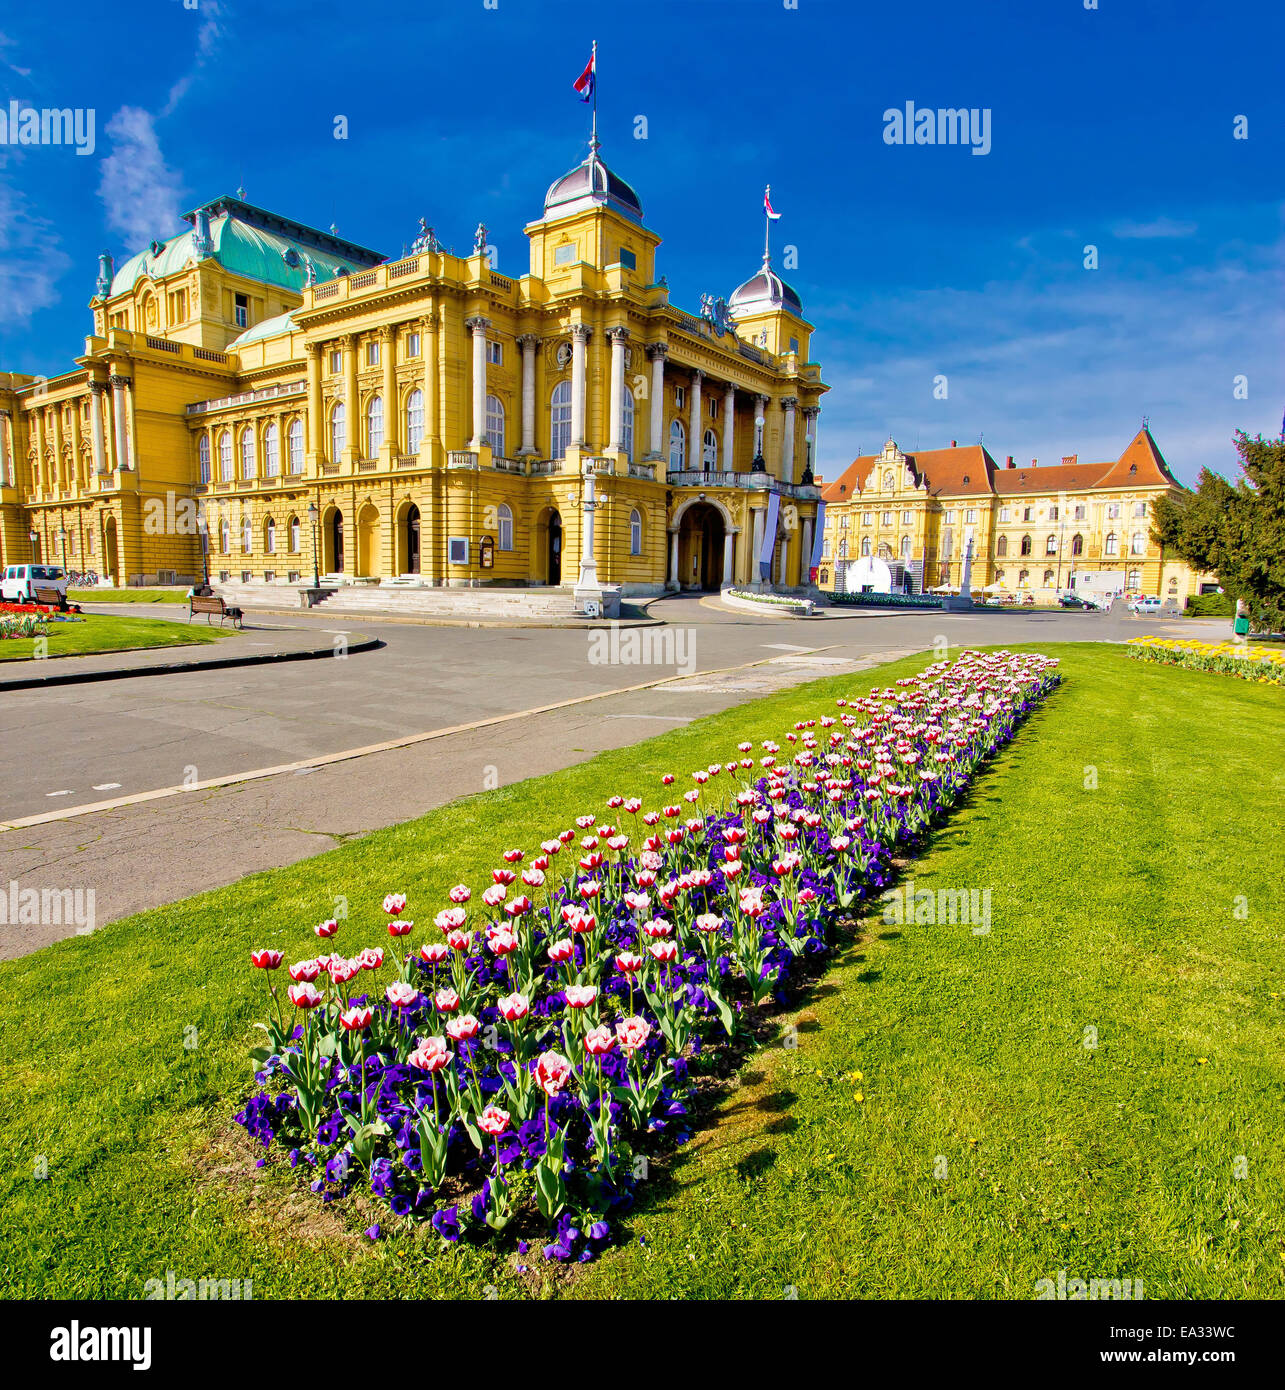 Marshal Tito square in Zagreb Stock Photo